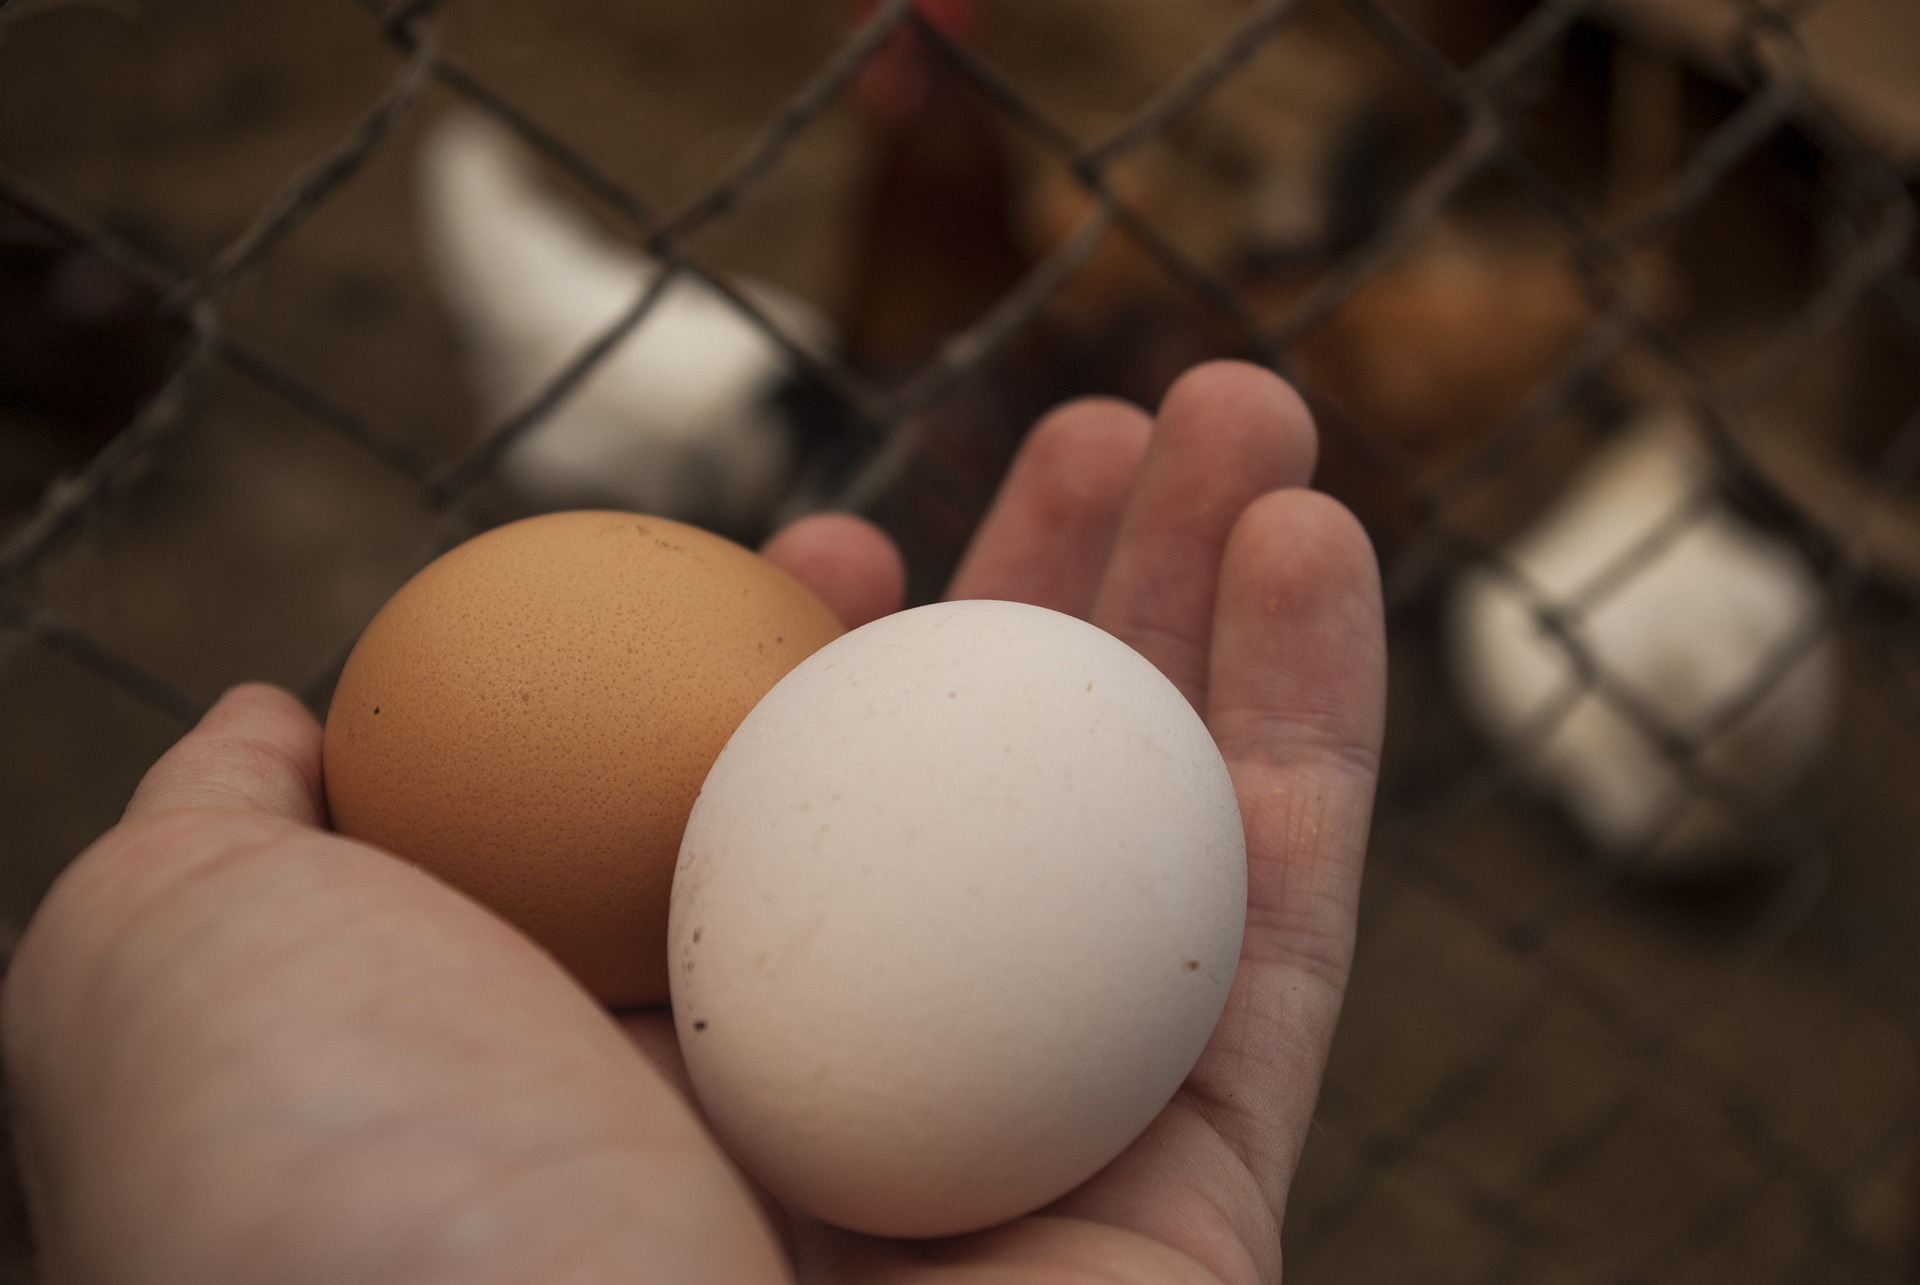 Les sols pollués contaminent les œufs des poulaillers d'une grande partie de la région parisienne. © Romaboy, Pixabay